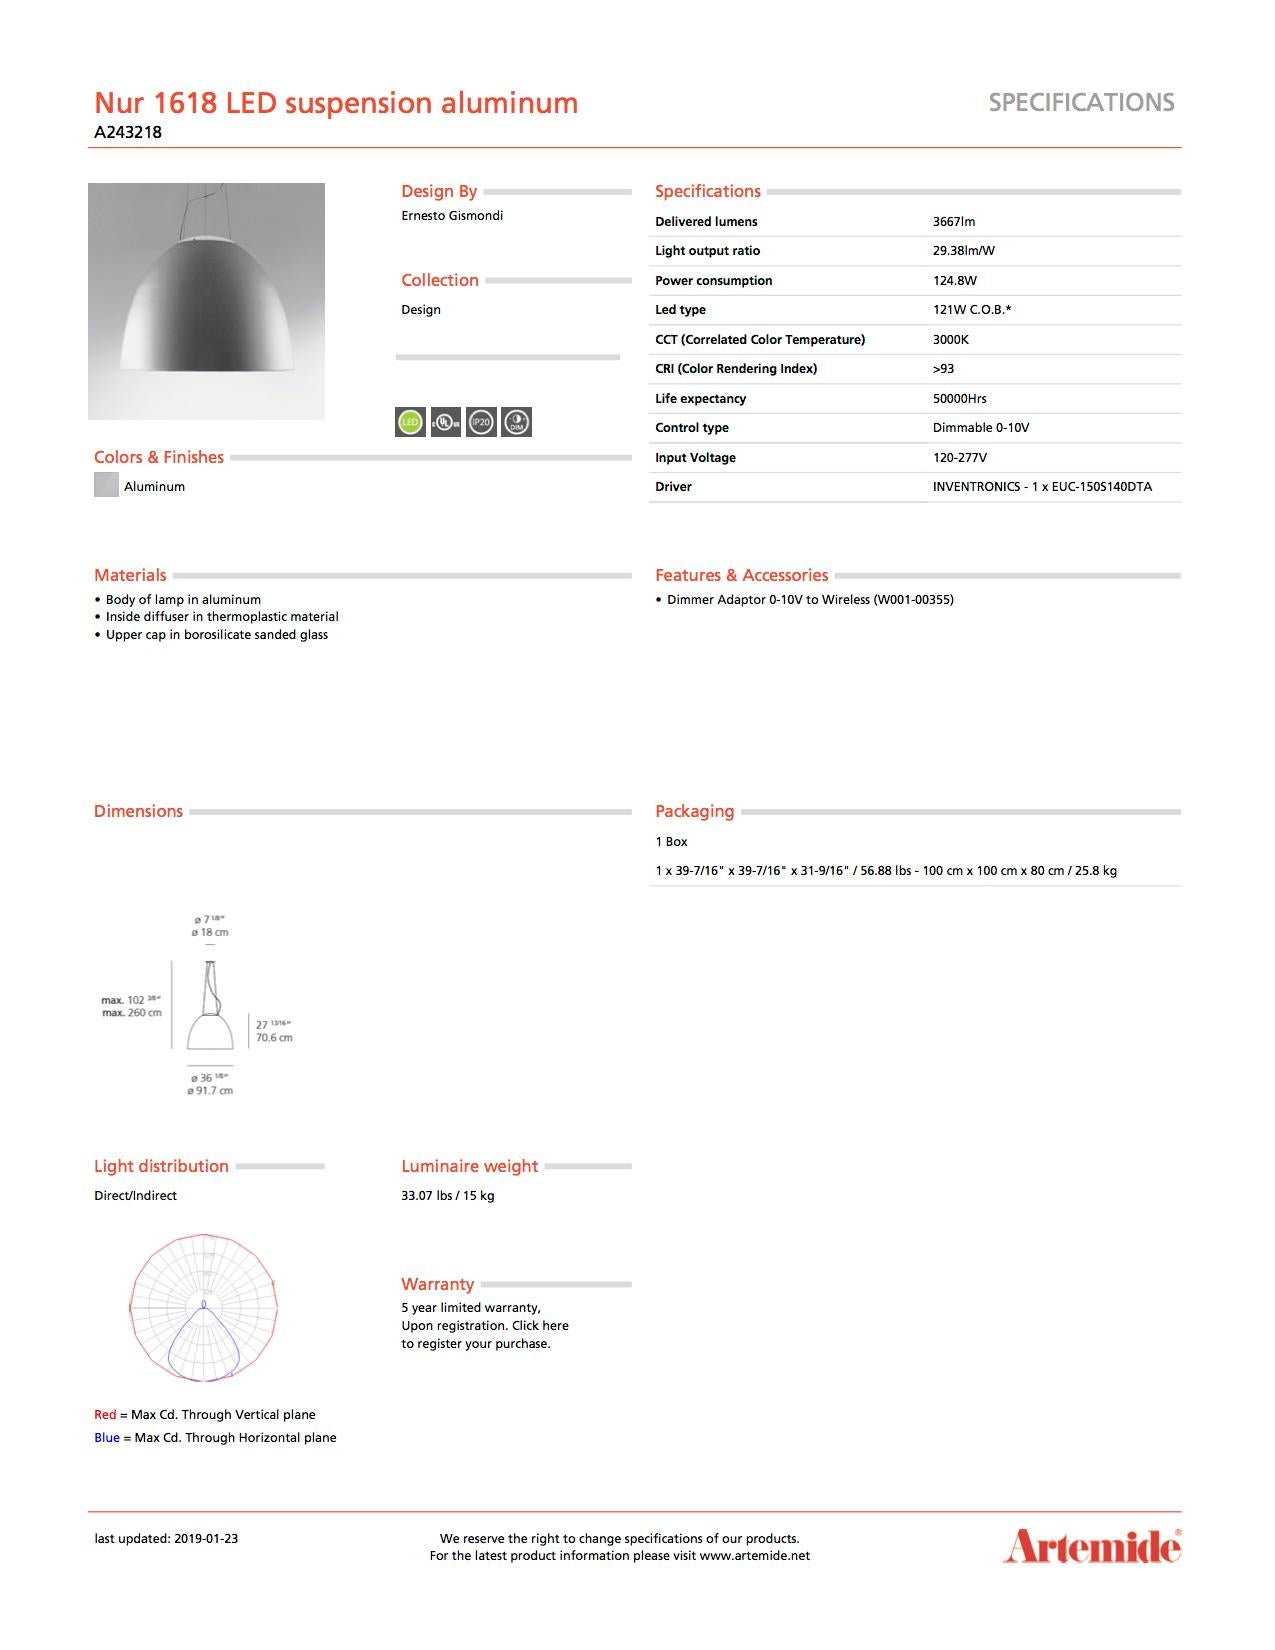 Modern Artemide Nur 1618 LED Suspension Light in Aluminum For Sale